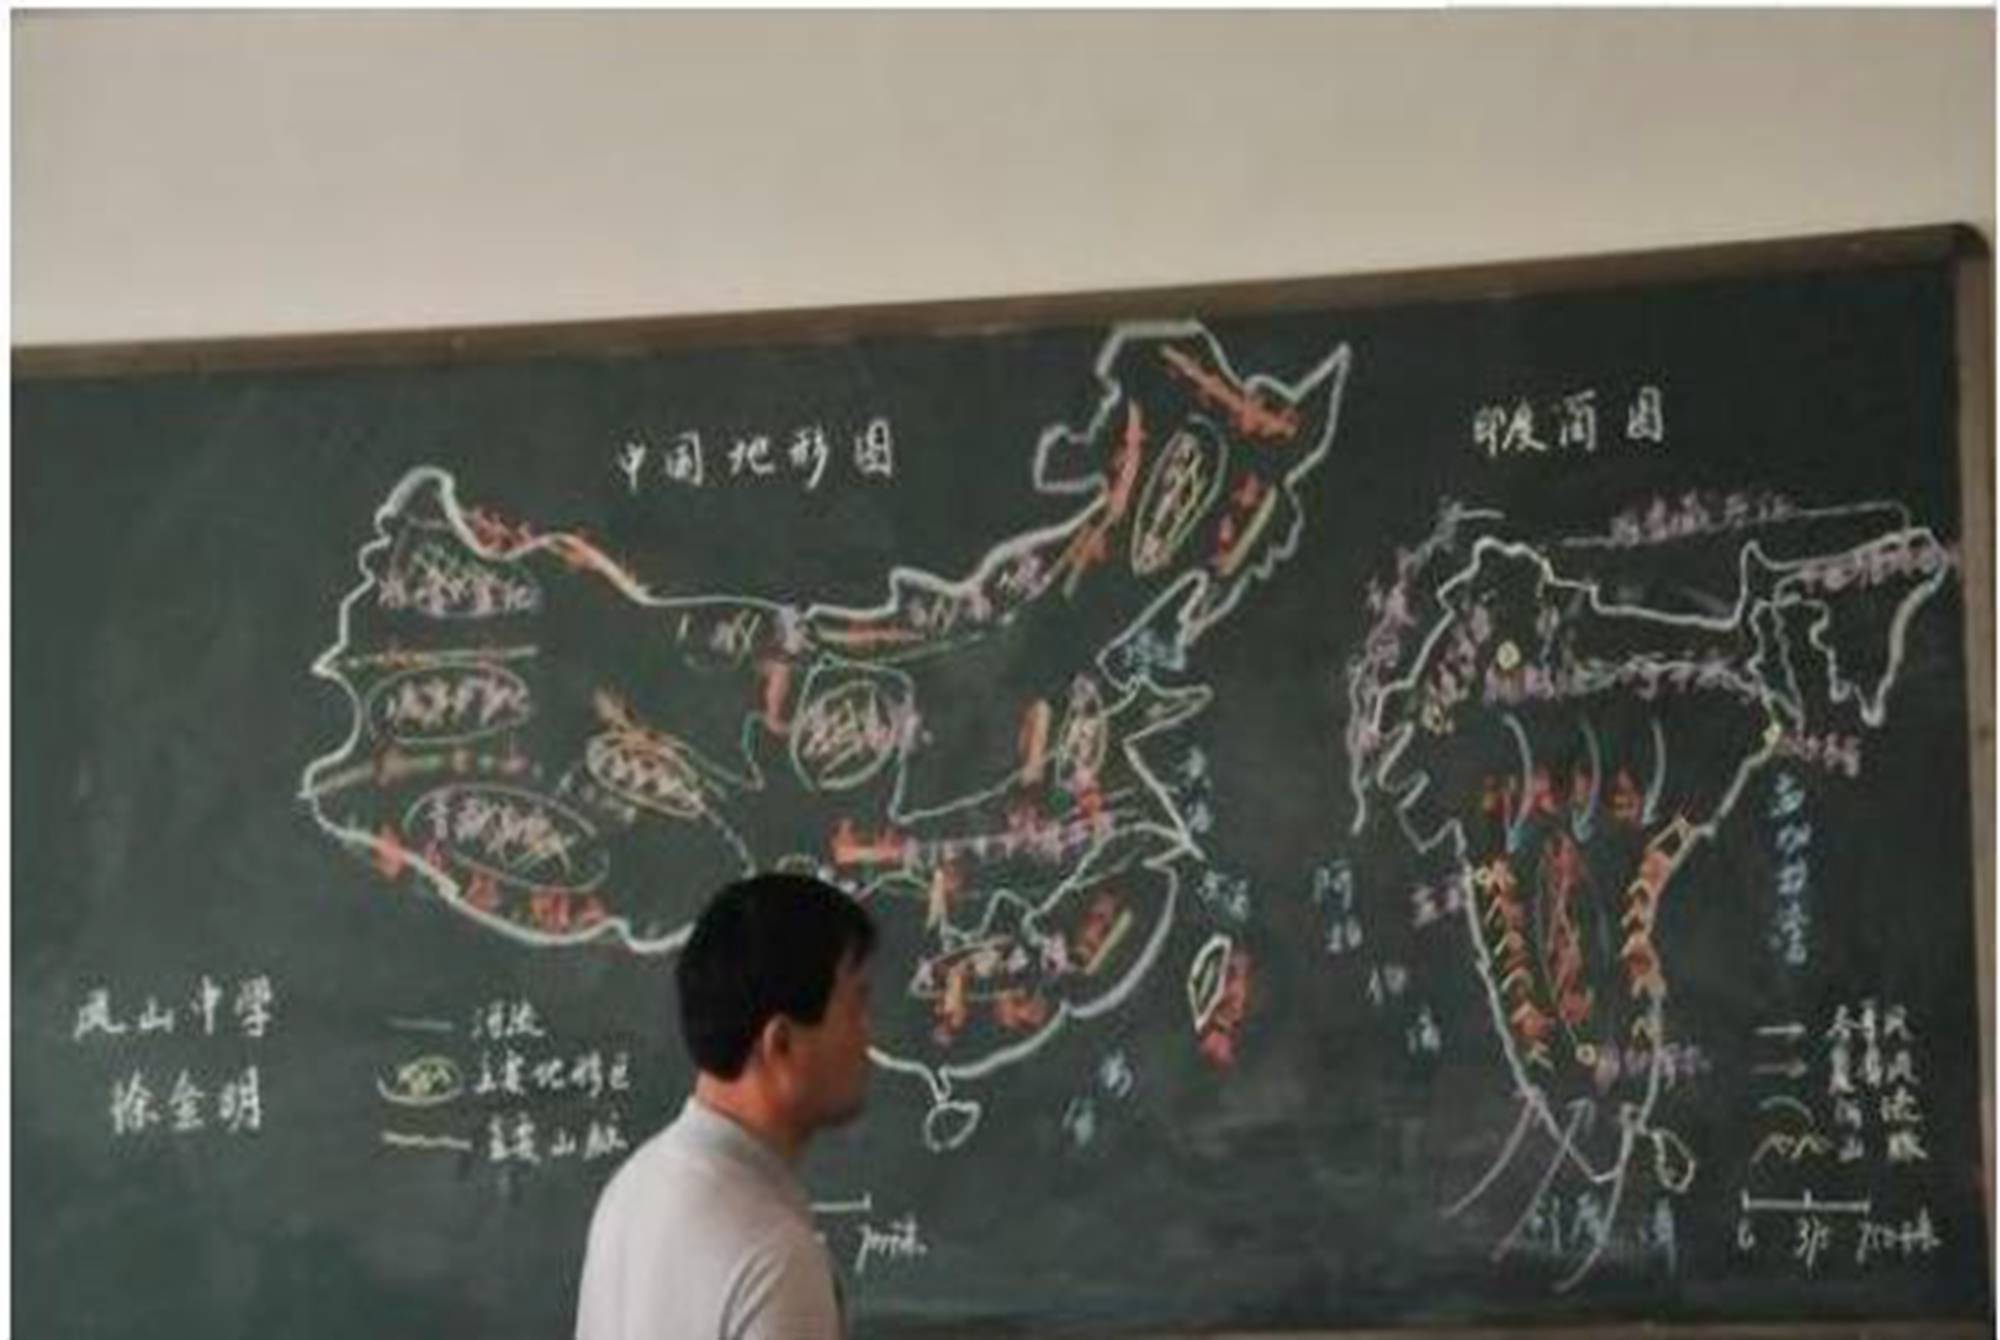 而这位老师显然是专家级别的,将中国地图绘制得栩栩如生,甚至能清晰